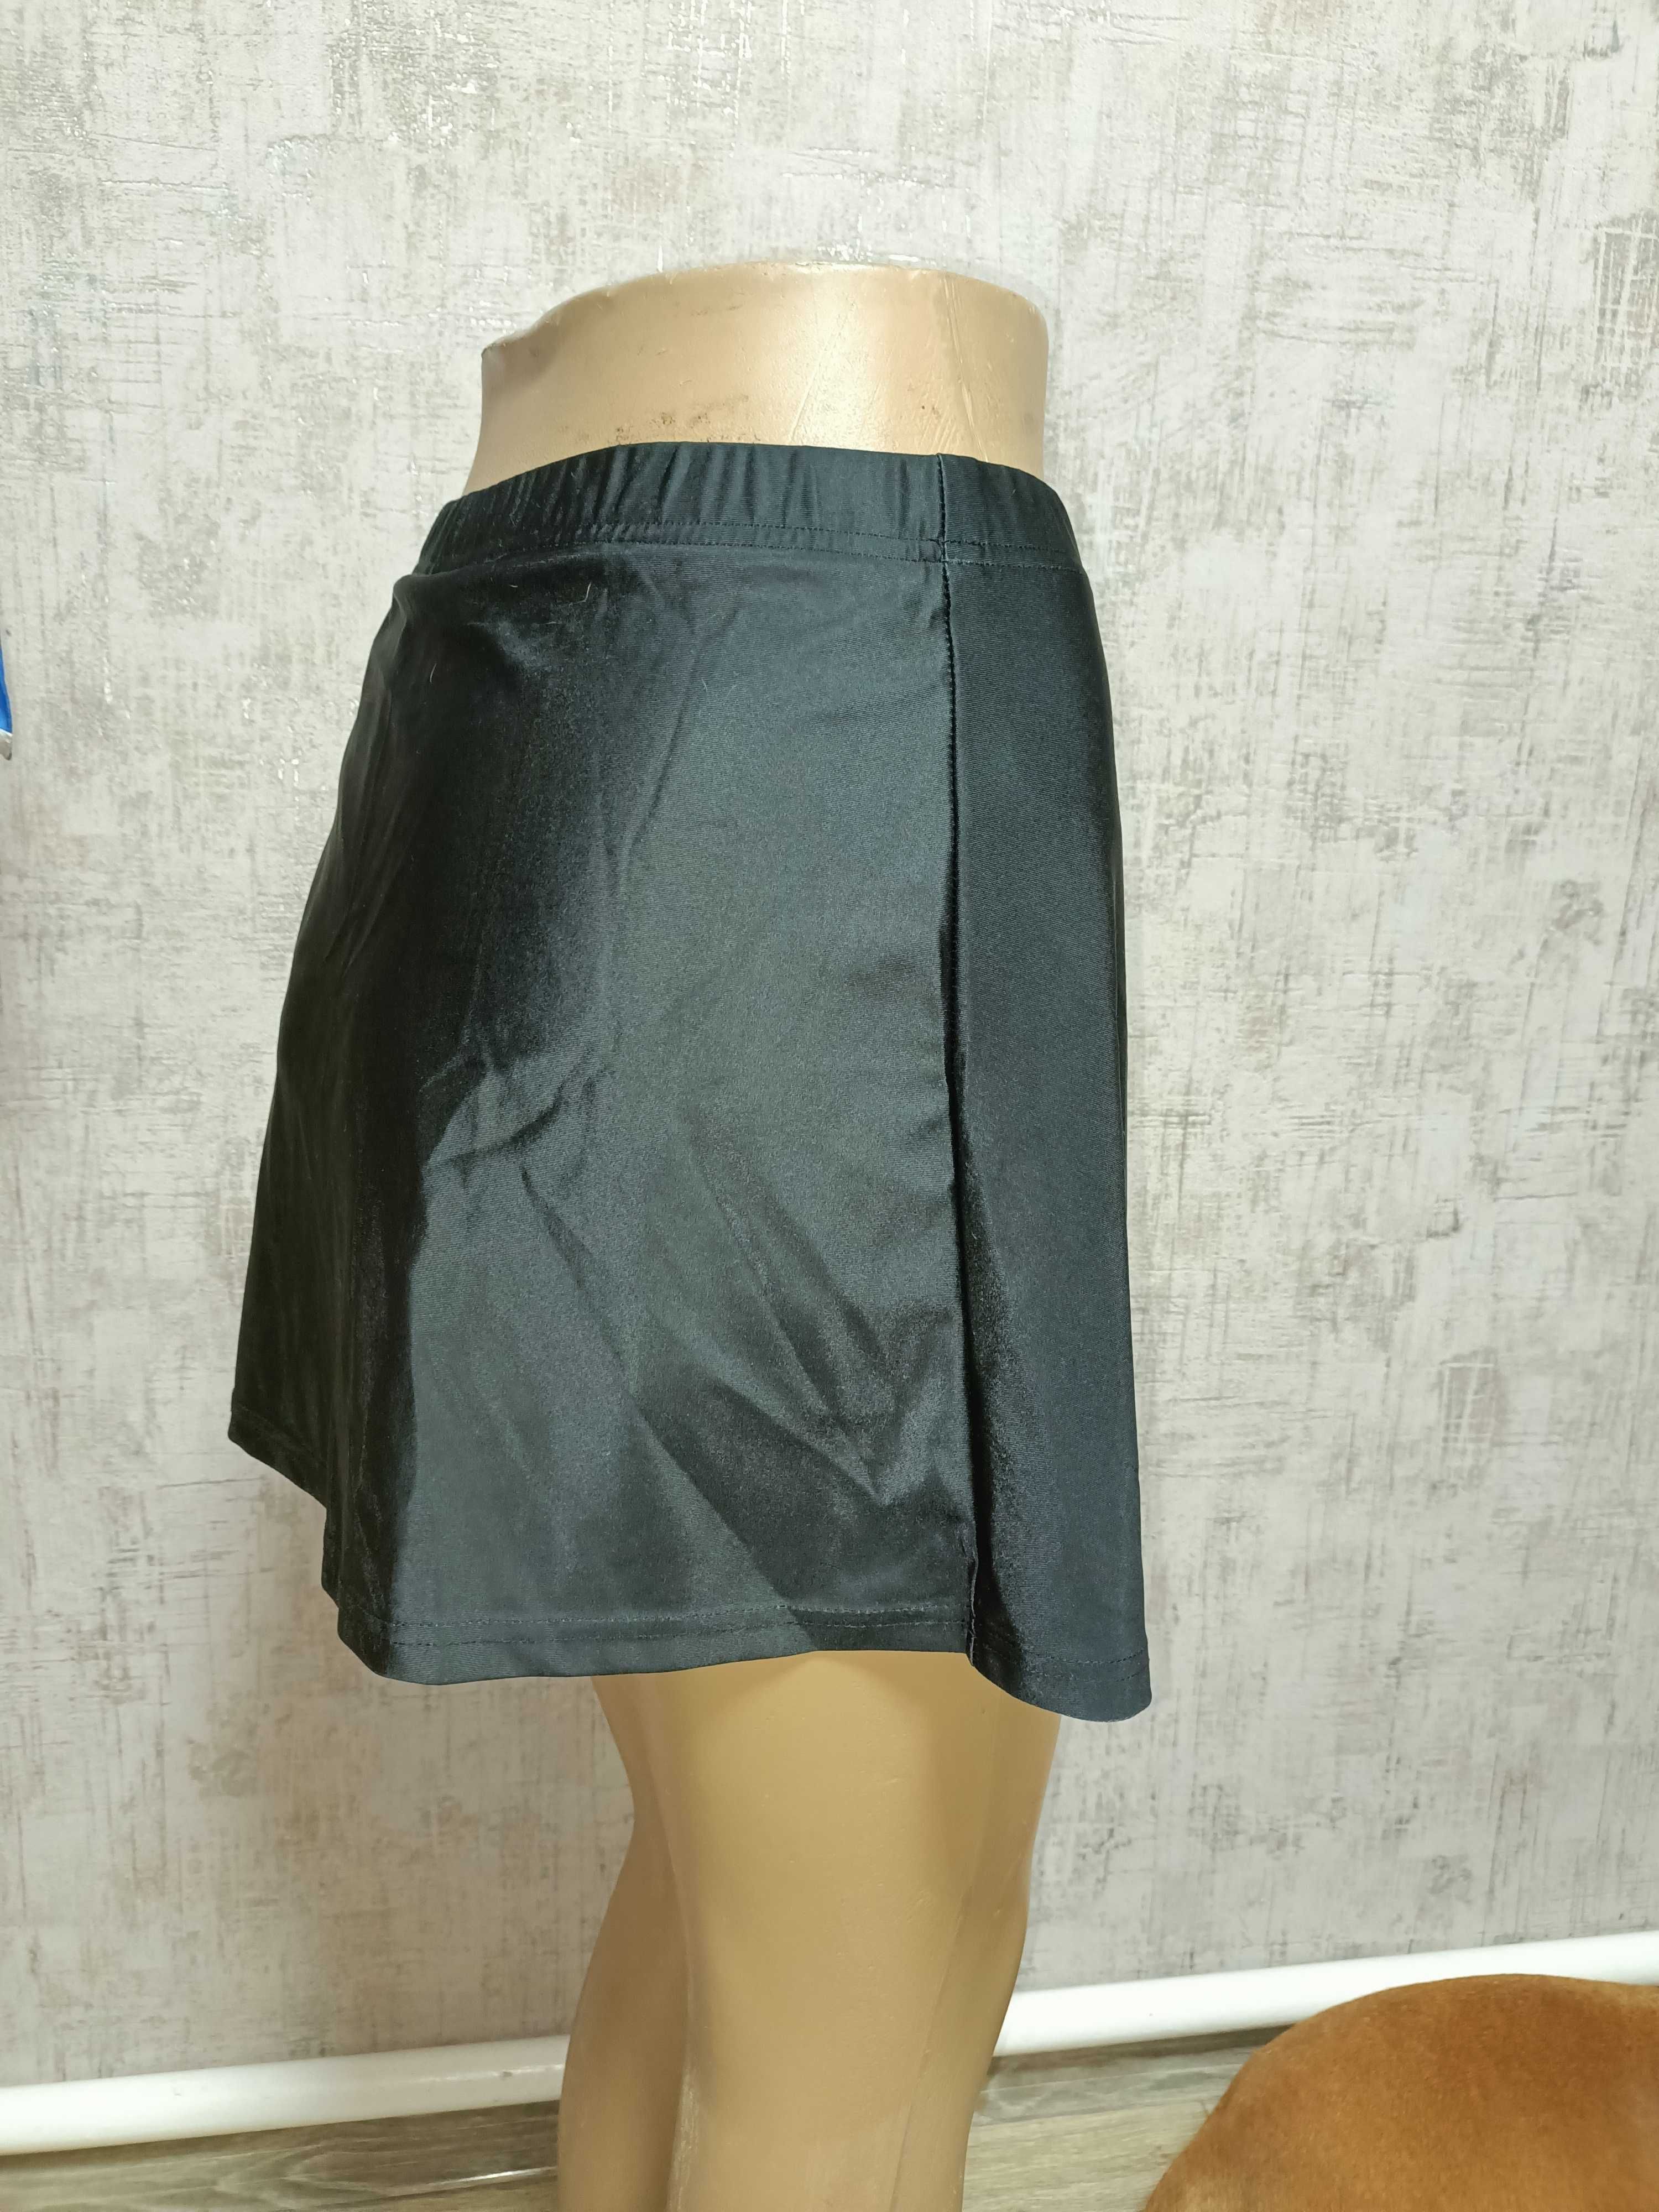 Велосипедная юбка-шорты L размер спортивная юбка